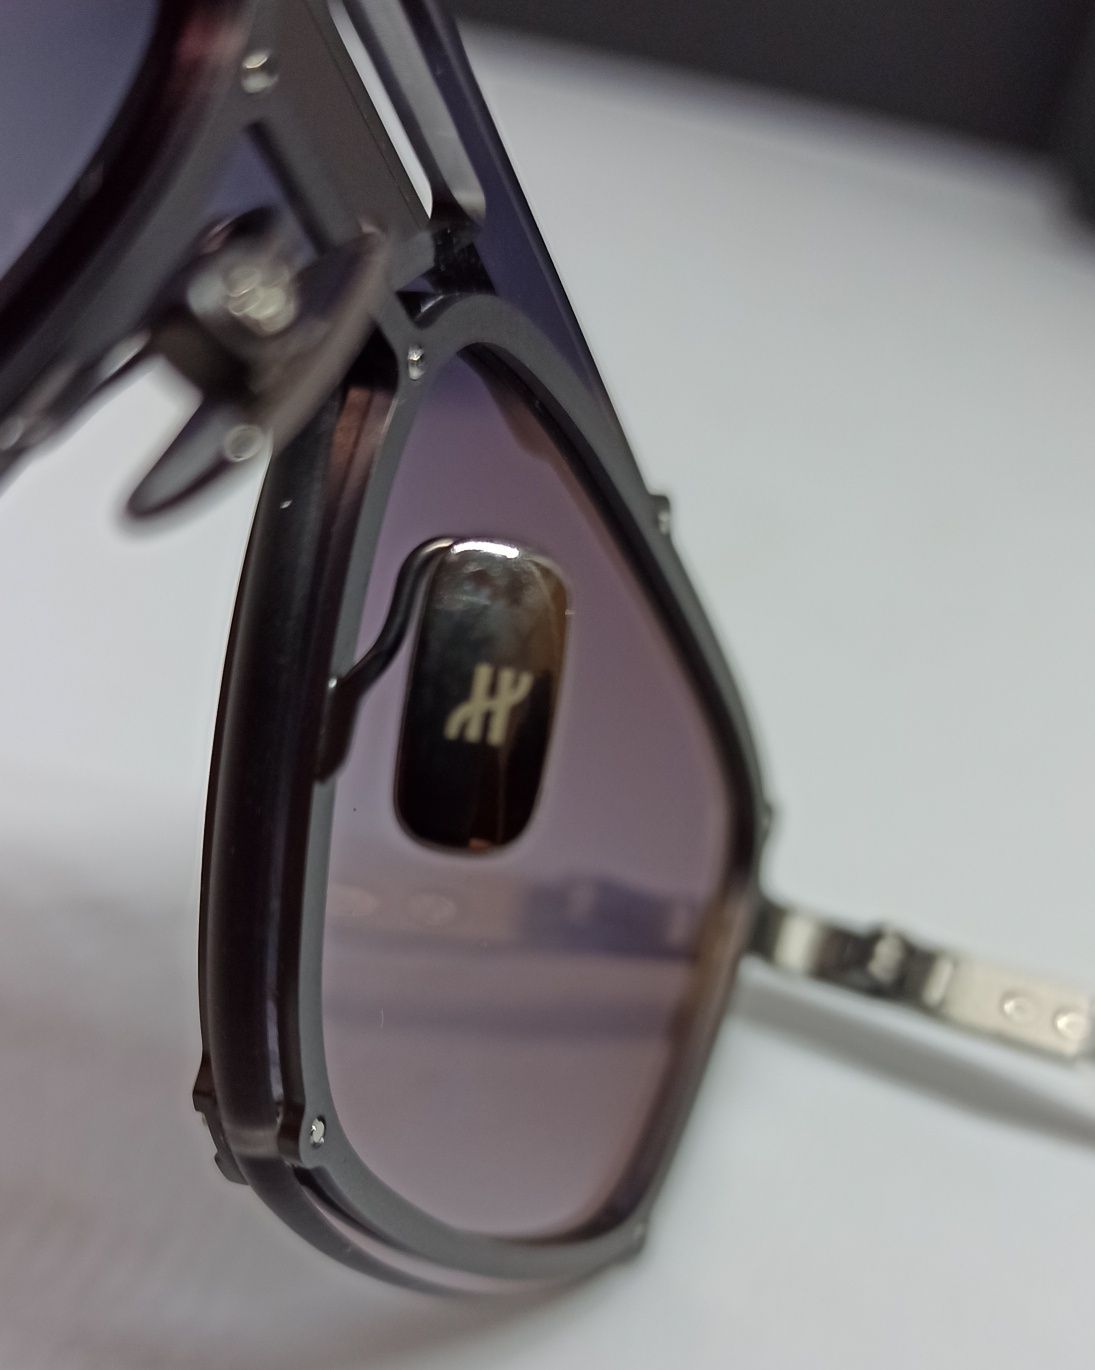 HUBLOT H 040 очки унисекс серо фиолетовый градиент в сером металле